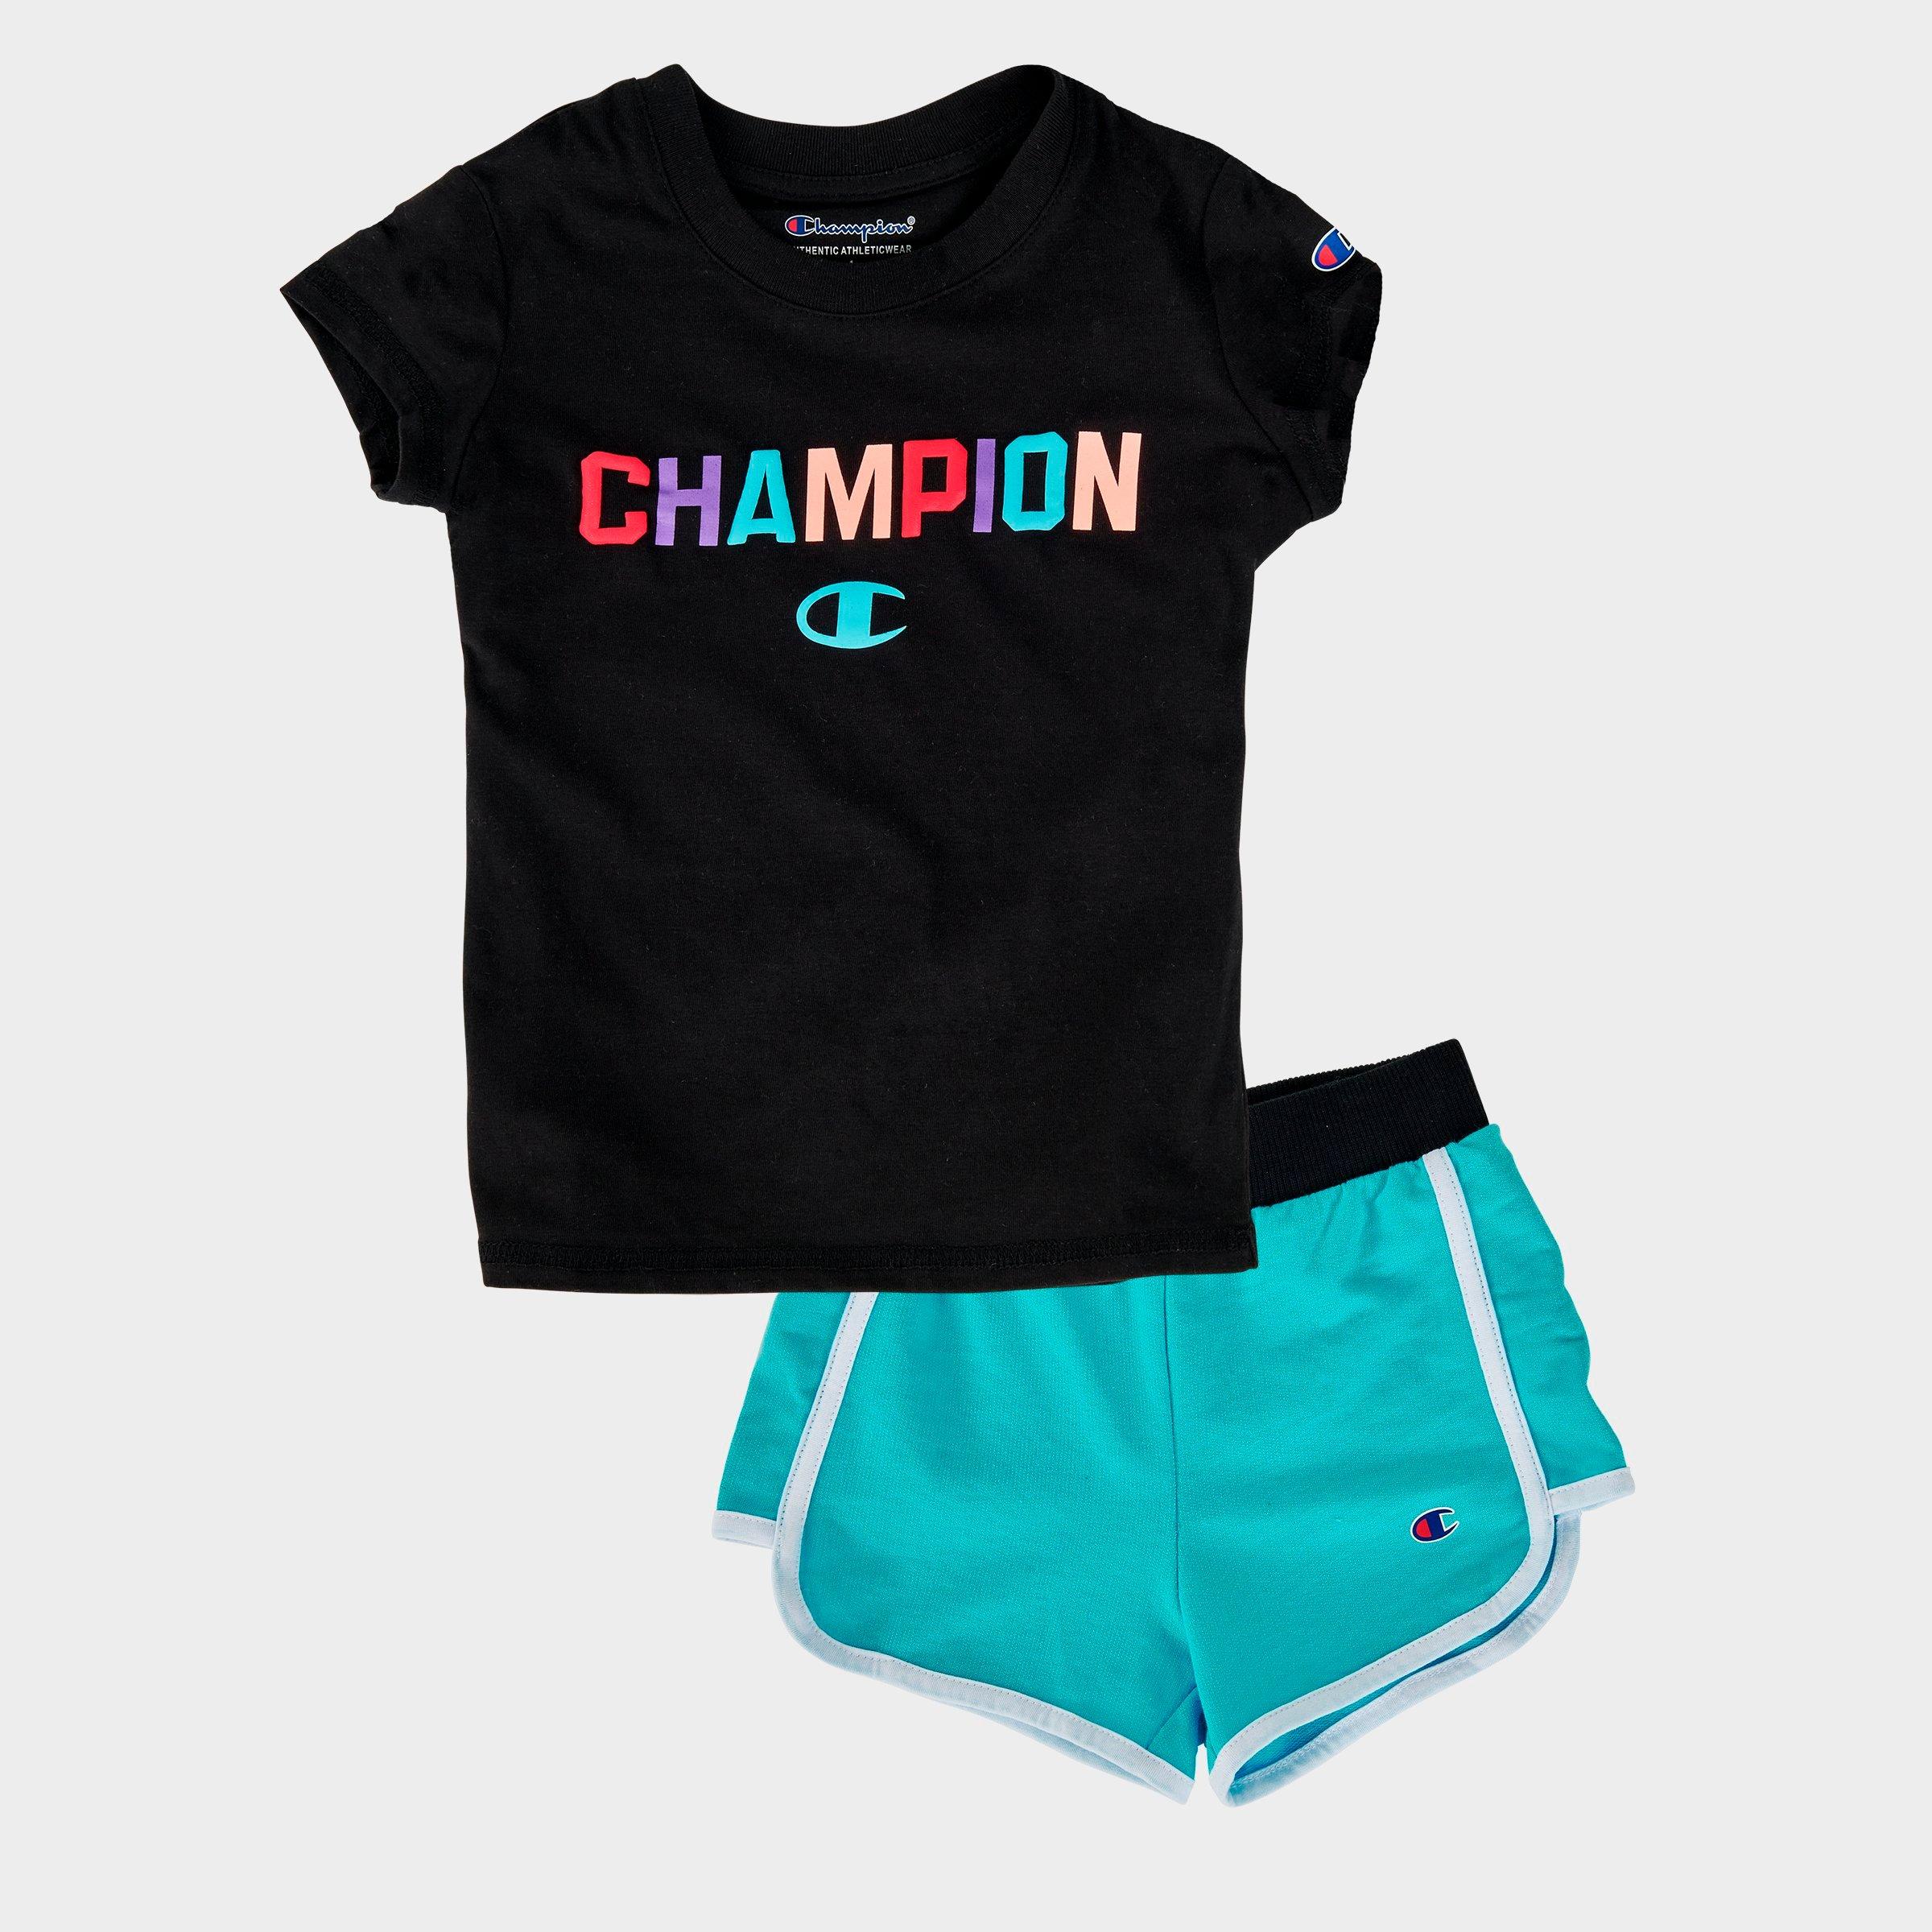 champion baby shirt